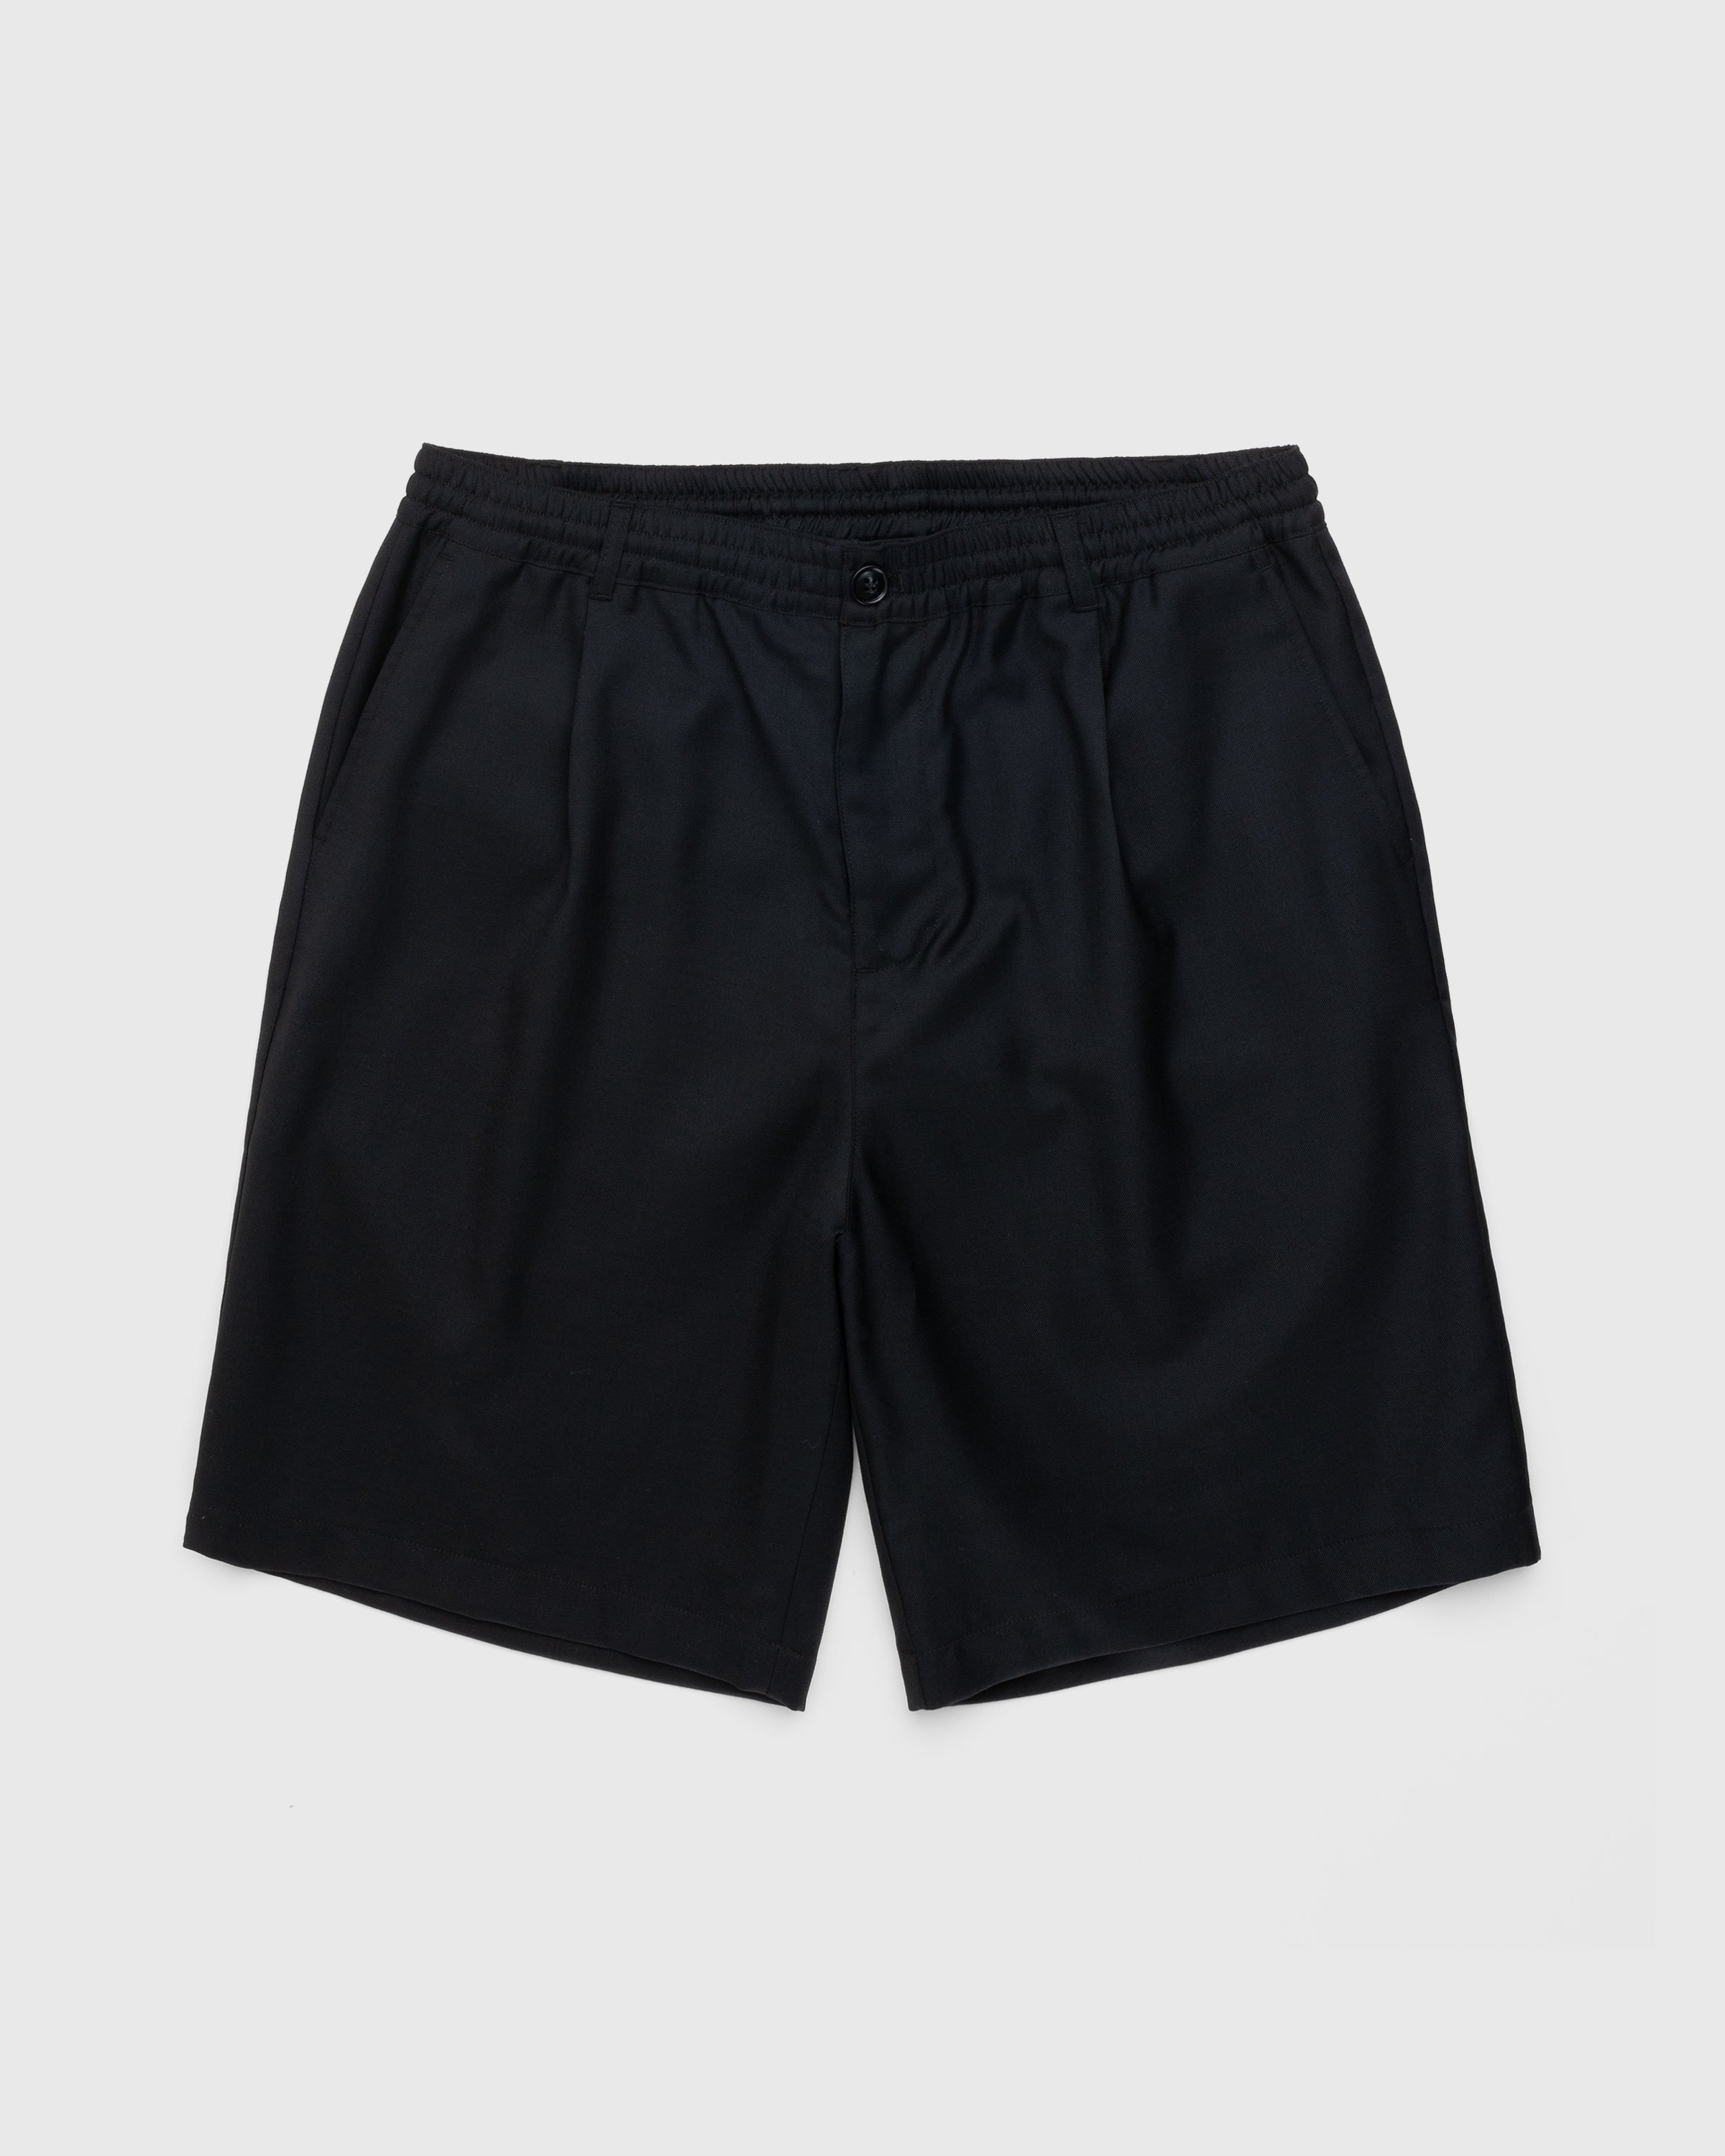 Highsnobiety - Tropical Wool Elastic Shorts Black - Clothing - Black - Image 1